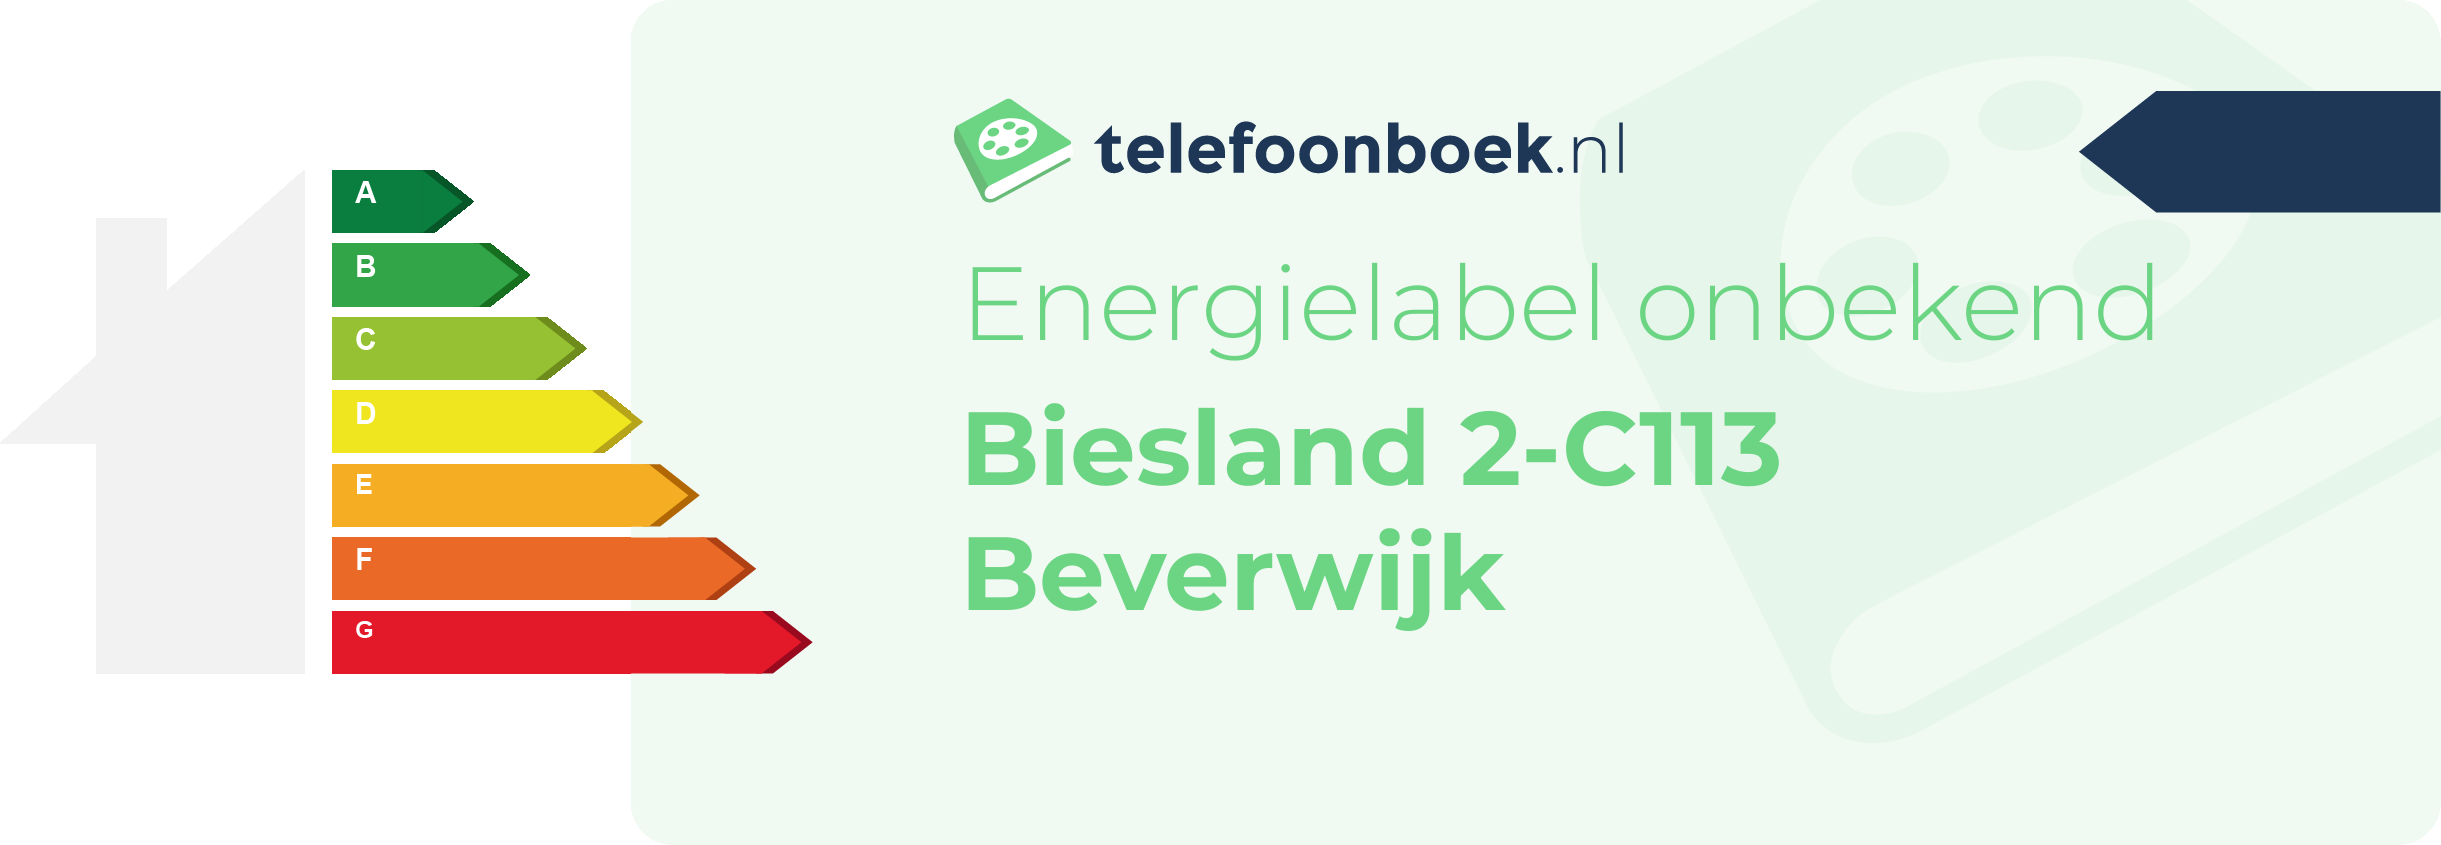 Energielabel Biesland 2-C113 Beverwijk